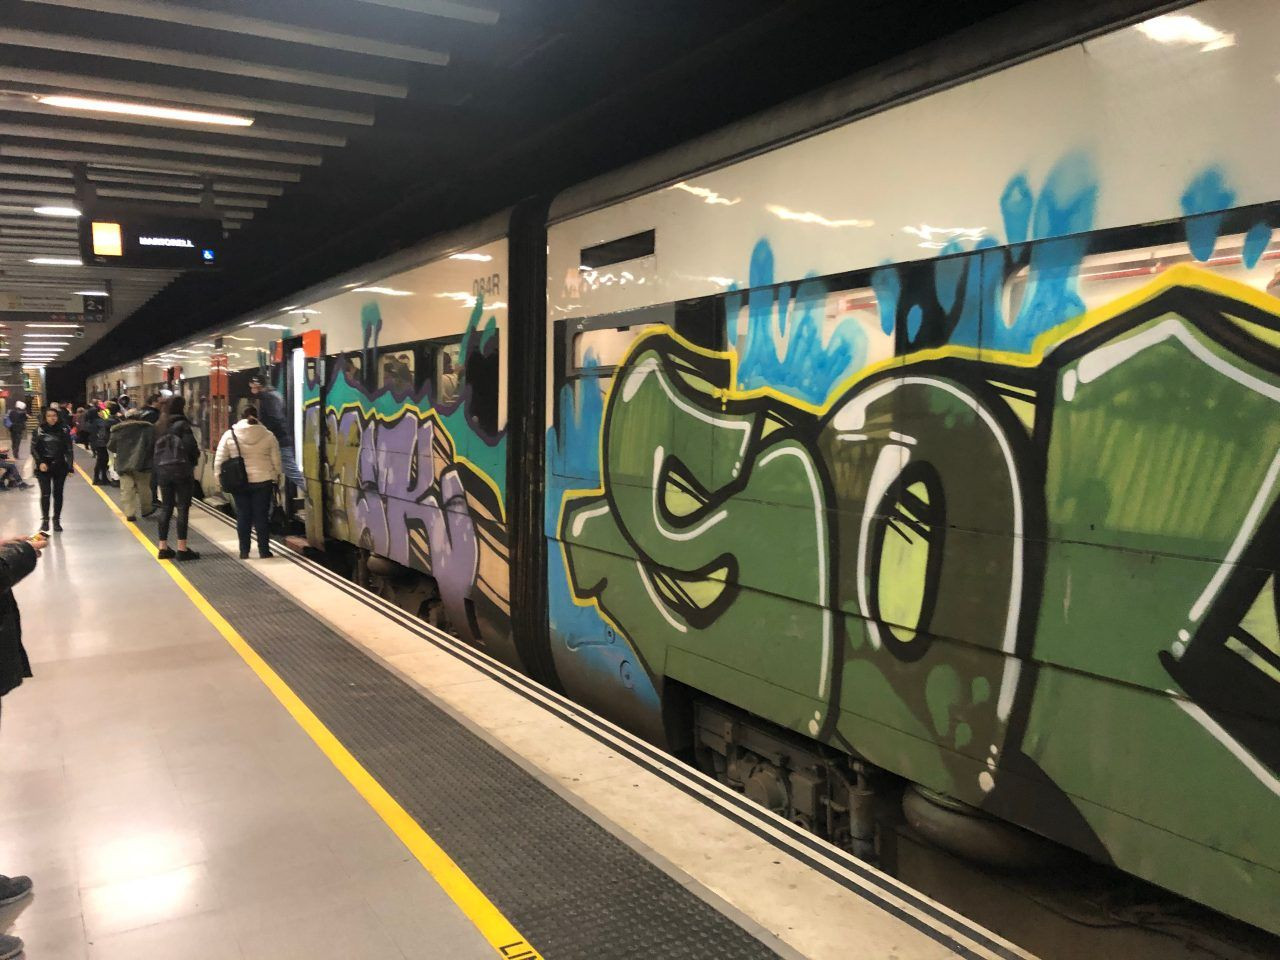 Imagen de un tren de Rodalies pintado con grafitis de punta a punta / RENFE